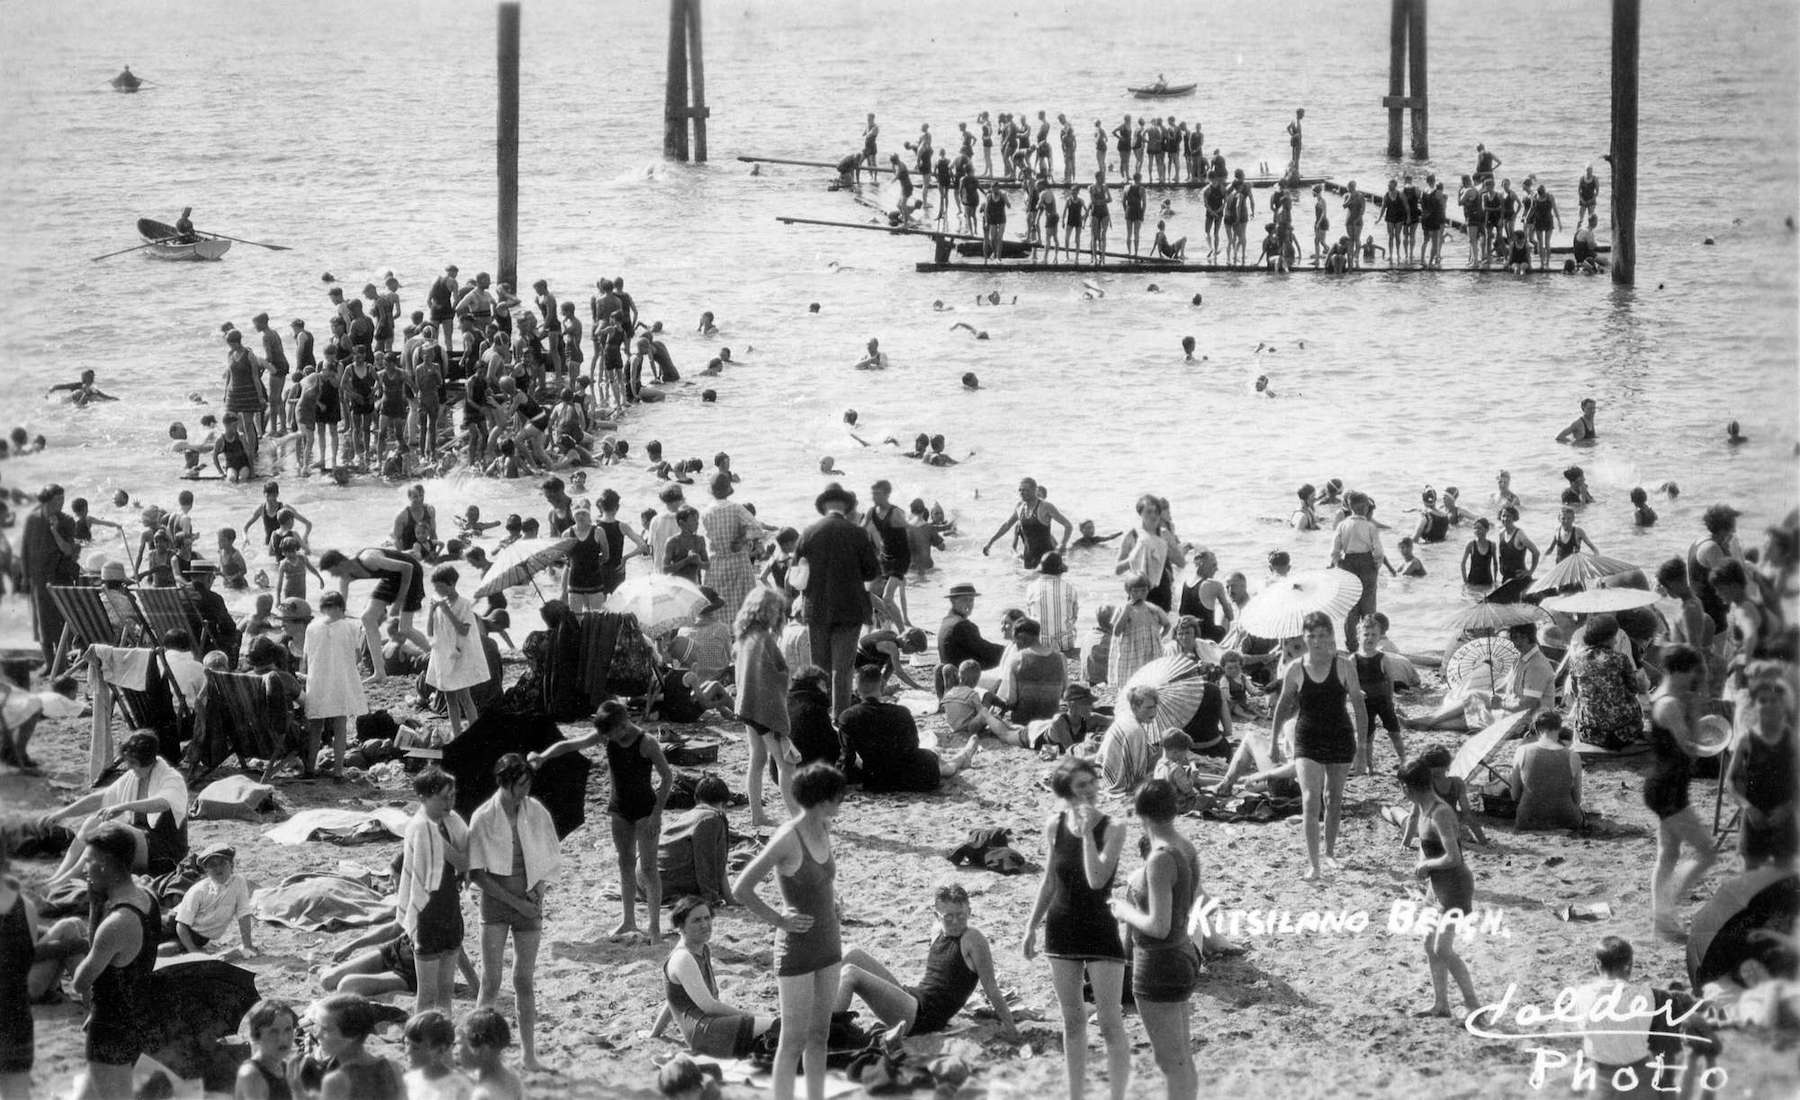 1920 - Kitsilano Beach